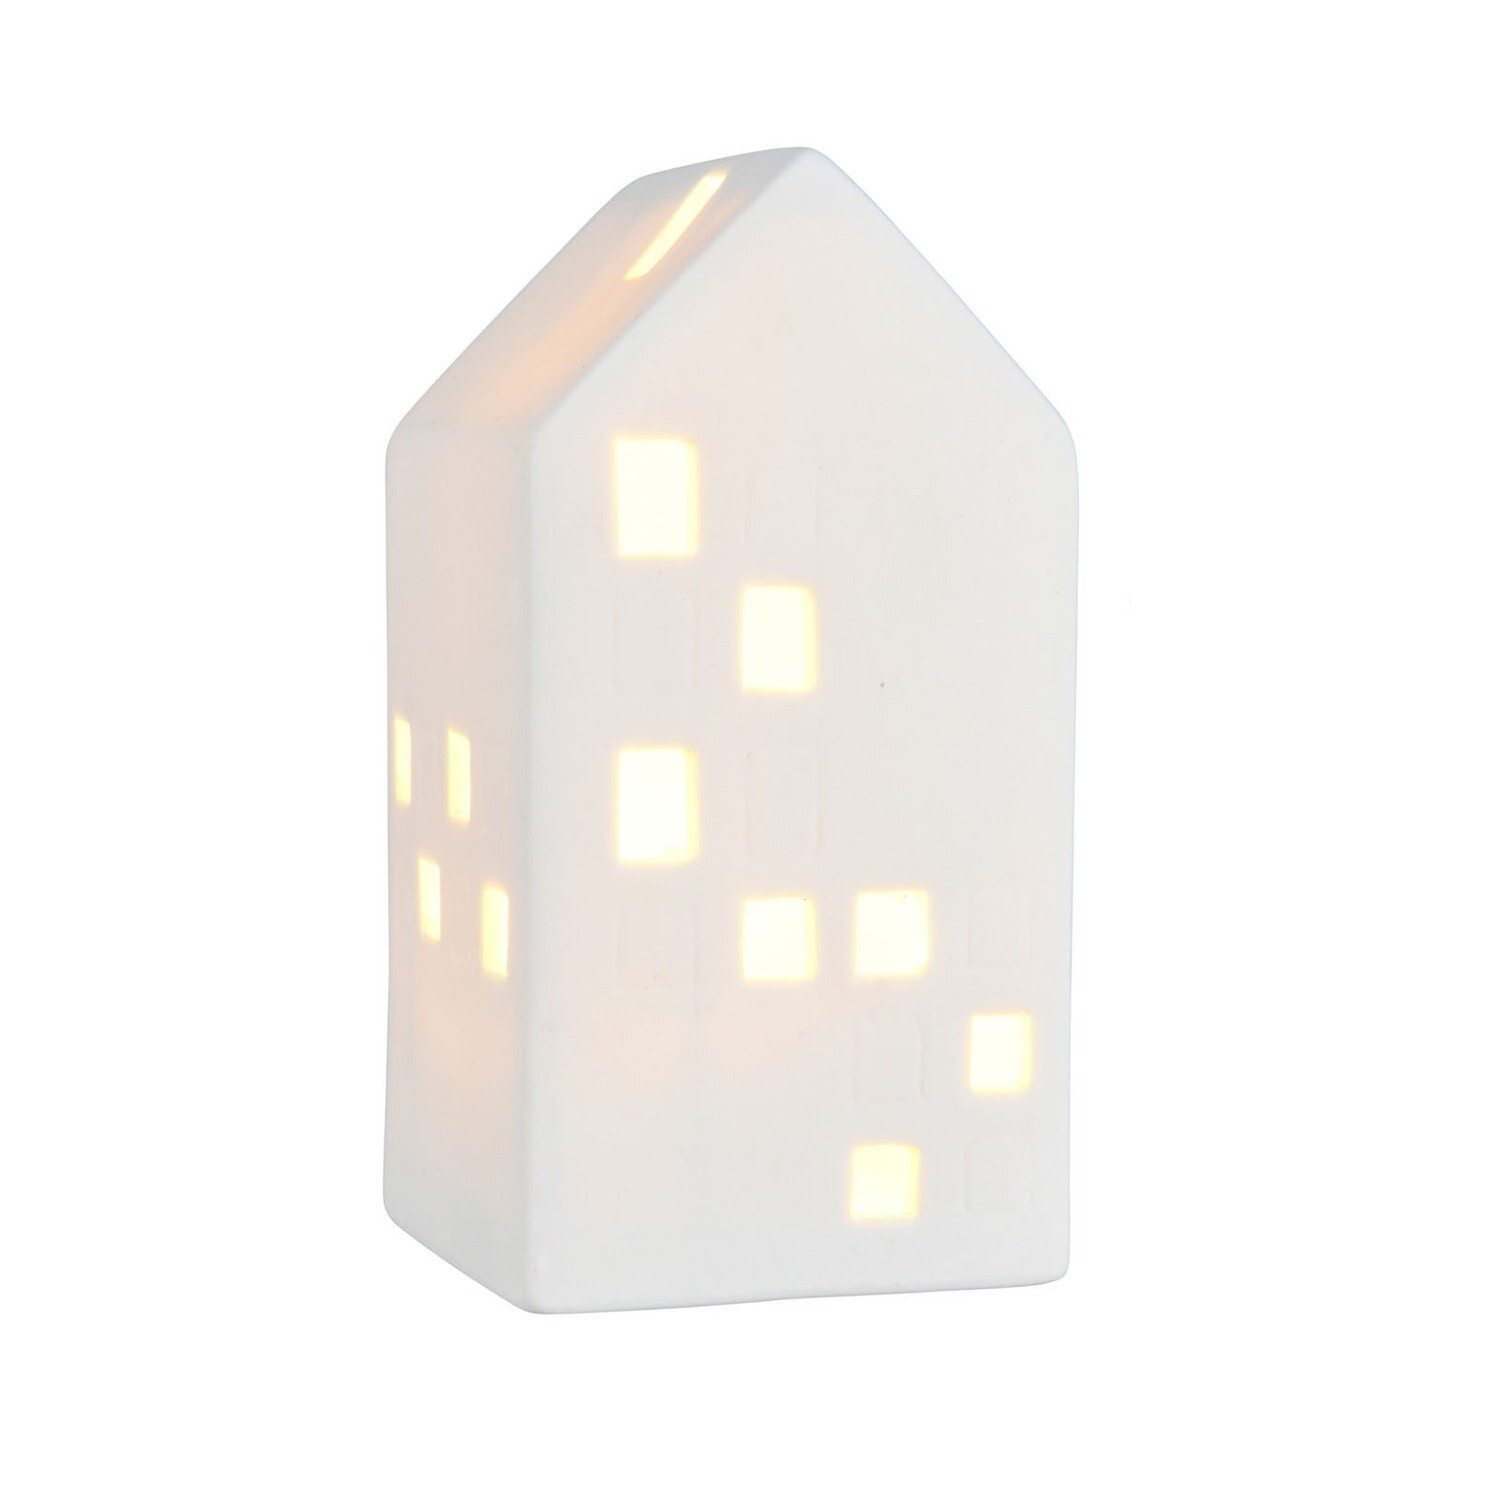 Домик керамический c LED подсветкой 7.3*6.8*13.5 см